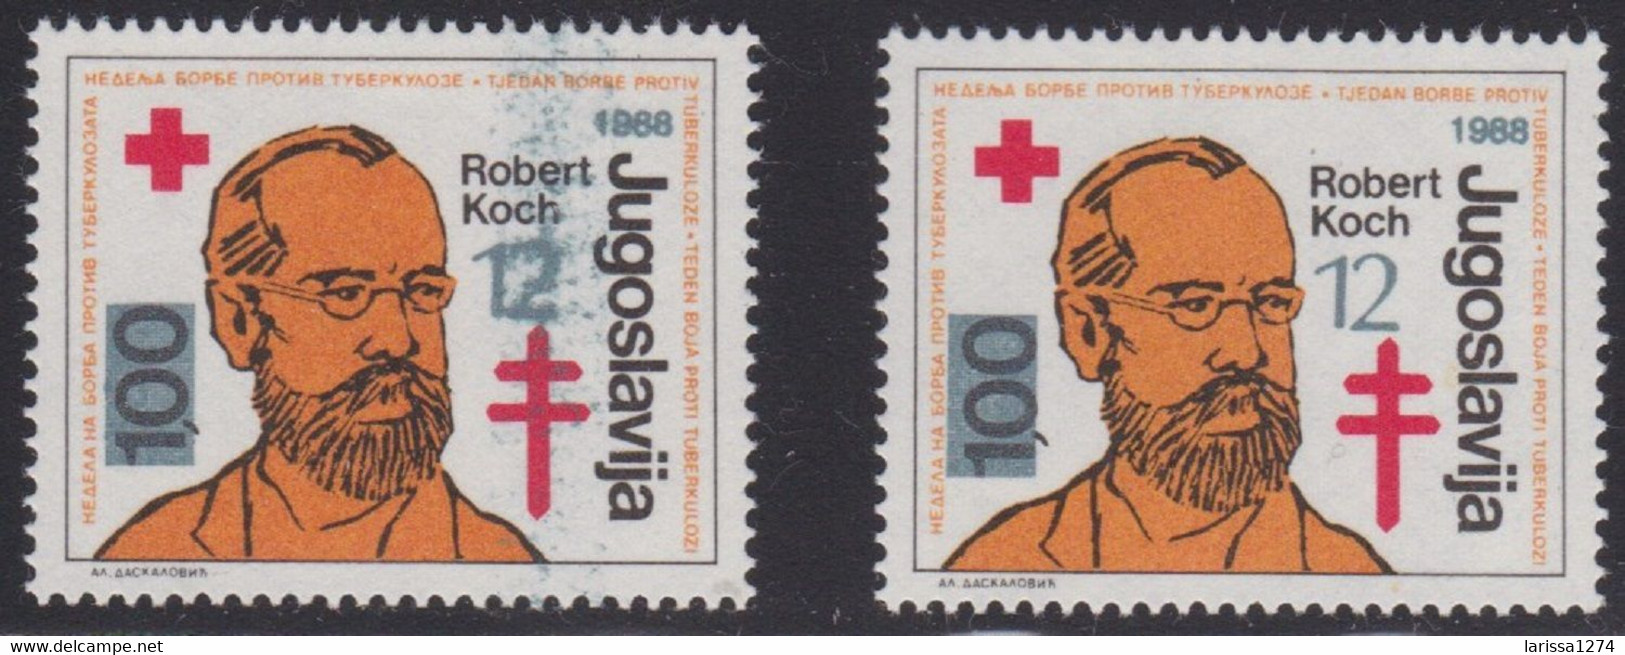 445. Yugoslavia 1988 Surcharge Robert Koch ERROR Stained Overprint MNH Michel #165 - Sin Dentar, Pruebas De Impresión Y Variedades